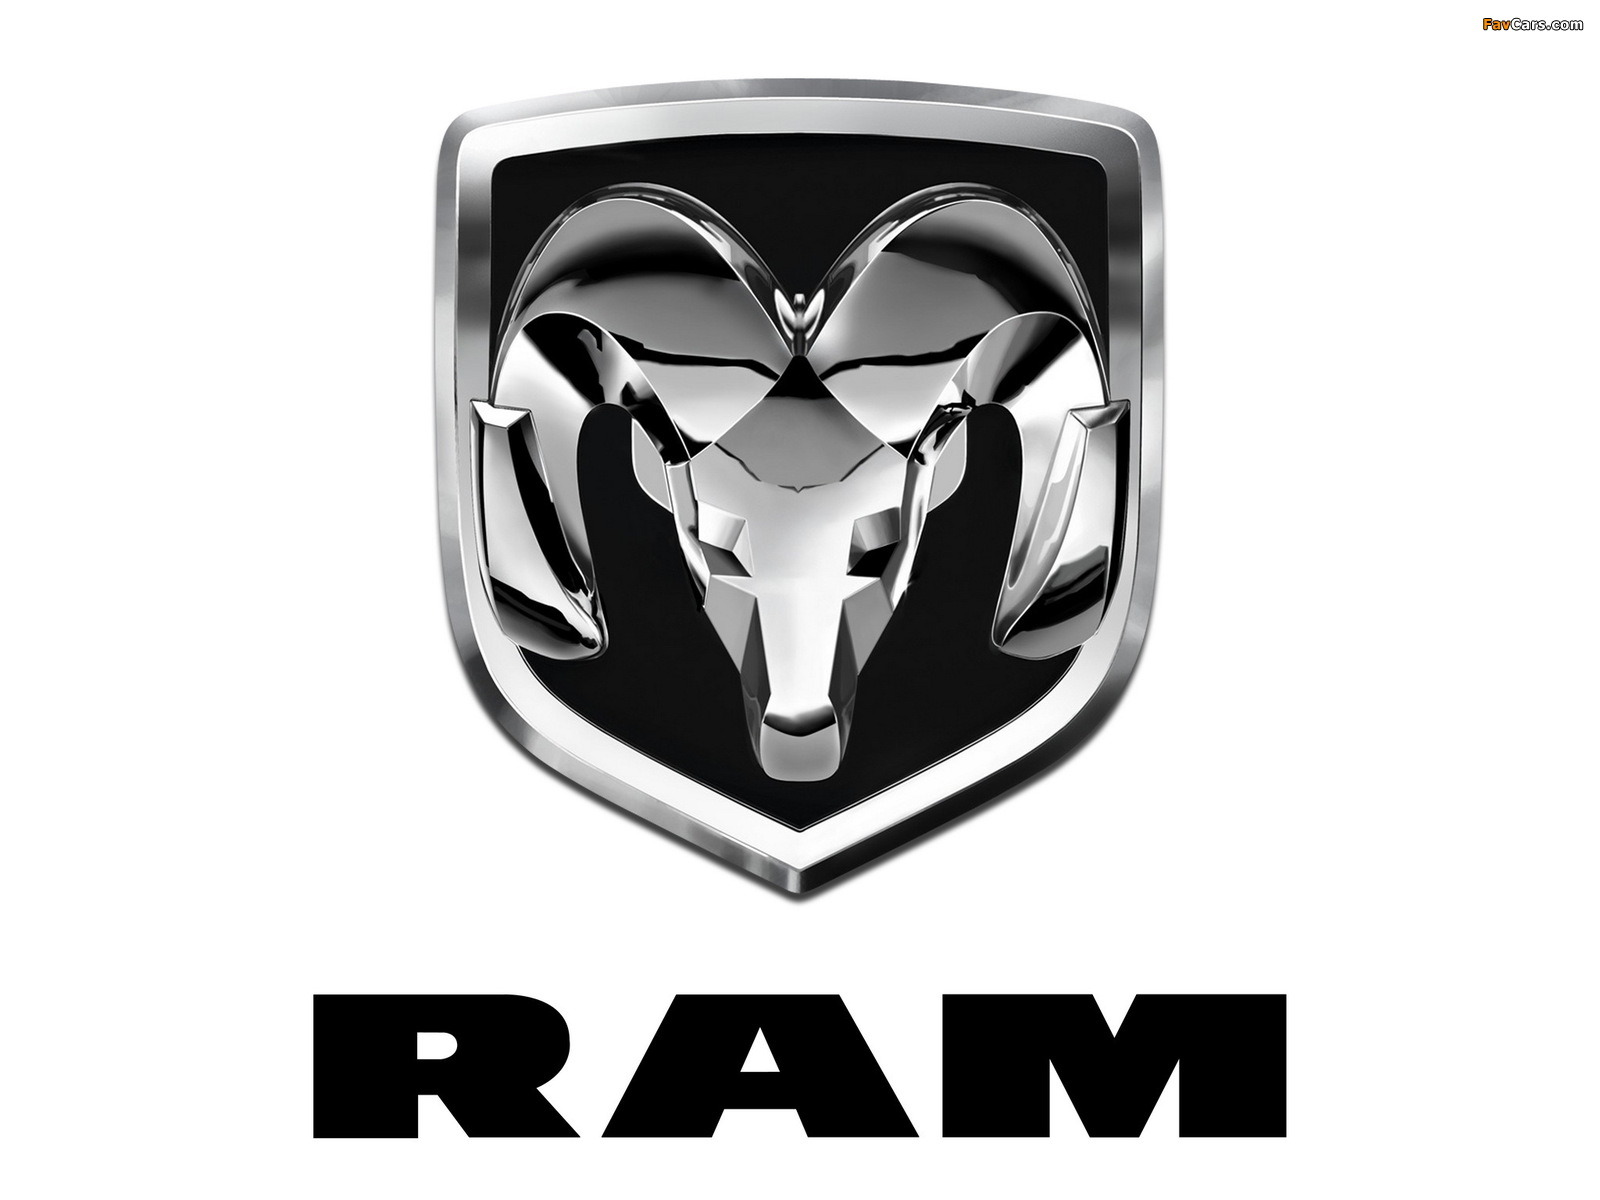 Ram photos (1600 x 1200)